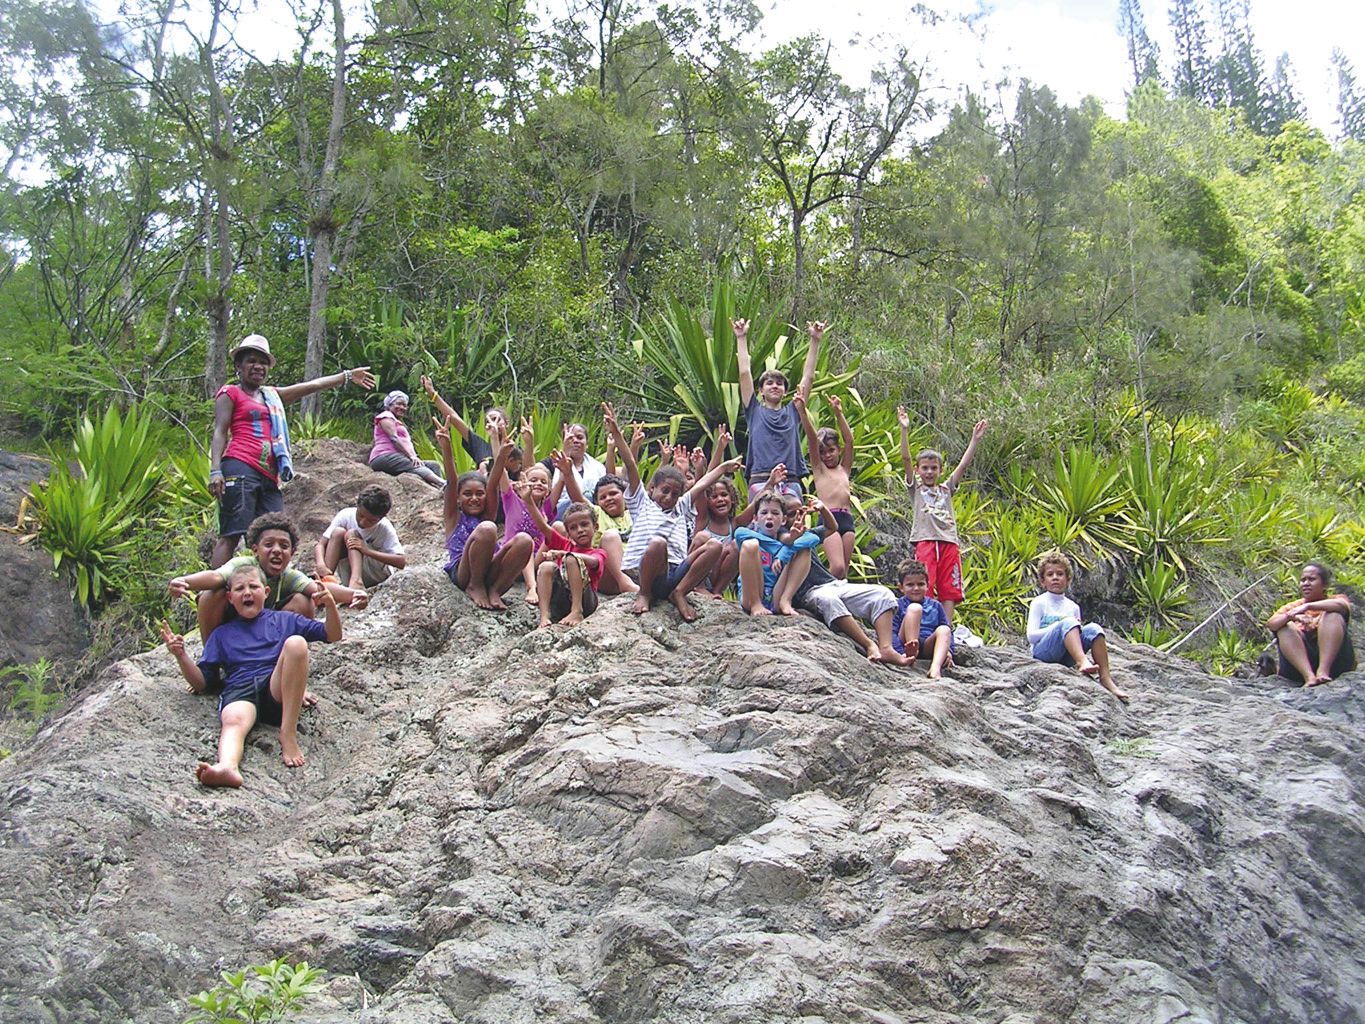 La Foa, cette semaine. Les enfants se sont rendus aux cascades de la tribu de Koindé où ils ont pu apprécier le contact avec l'eau avant de revenir au centre, des images plein la tête.